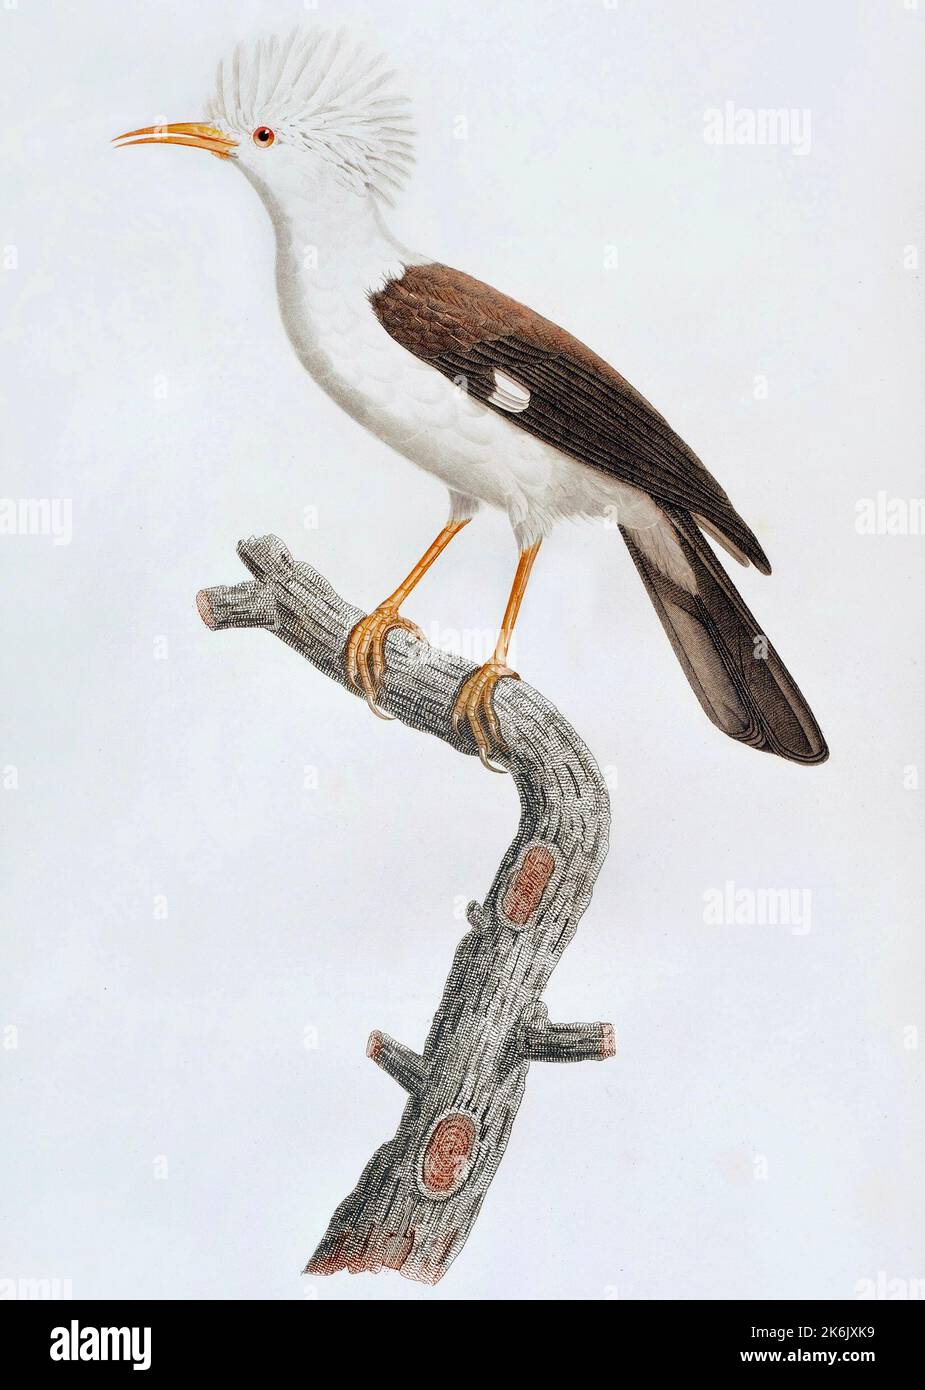 Der Hoopoe Starling von Jacques Barraband - Hoopoe Starling (Fregilupus varius), auch bekannt als Reunion-Star oder Bourbon-Haubenstarling, ist eine Art von Starling, der auf der Mascarene-Insel Reunion lebte und im Jahr 1850s ausgestorben wurde. Stockfoto